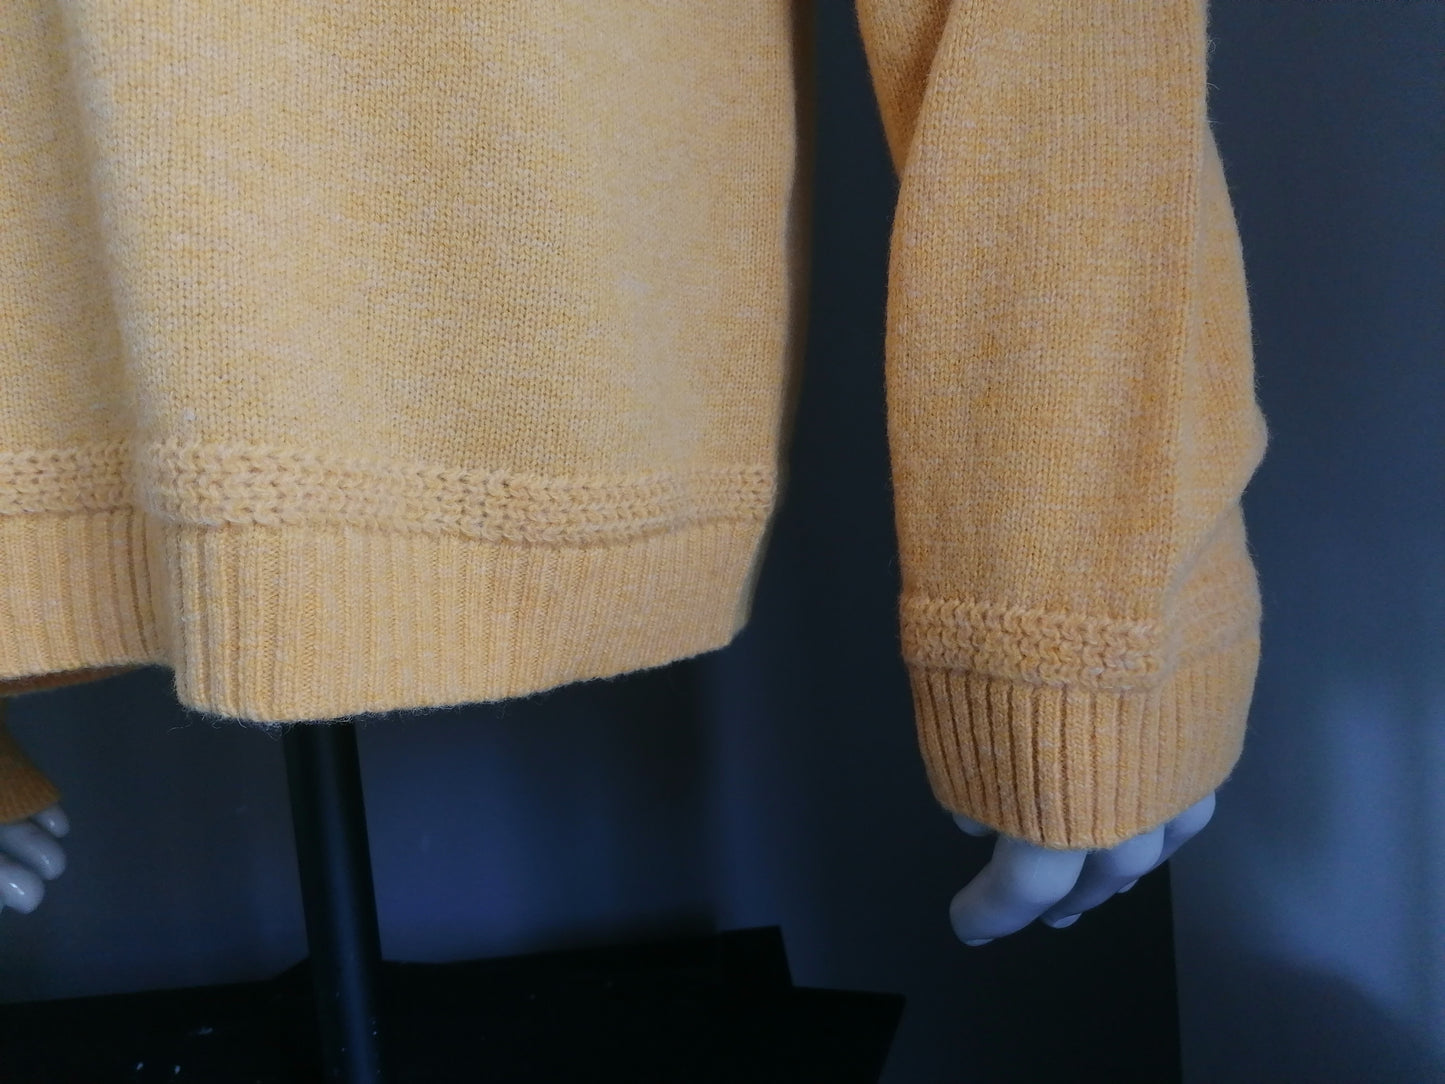 Suéter de lana GANT. Color amarillo. Tamaño 58 / XL / XXL. ¡¡NUEVO!!